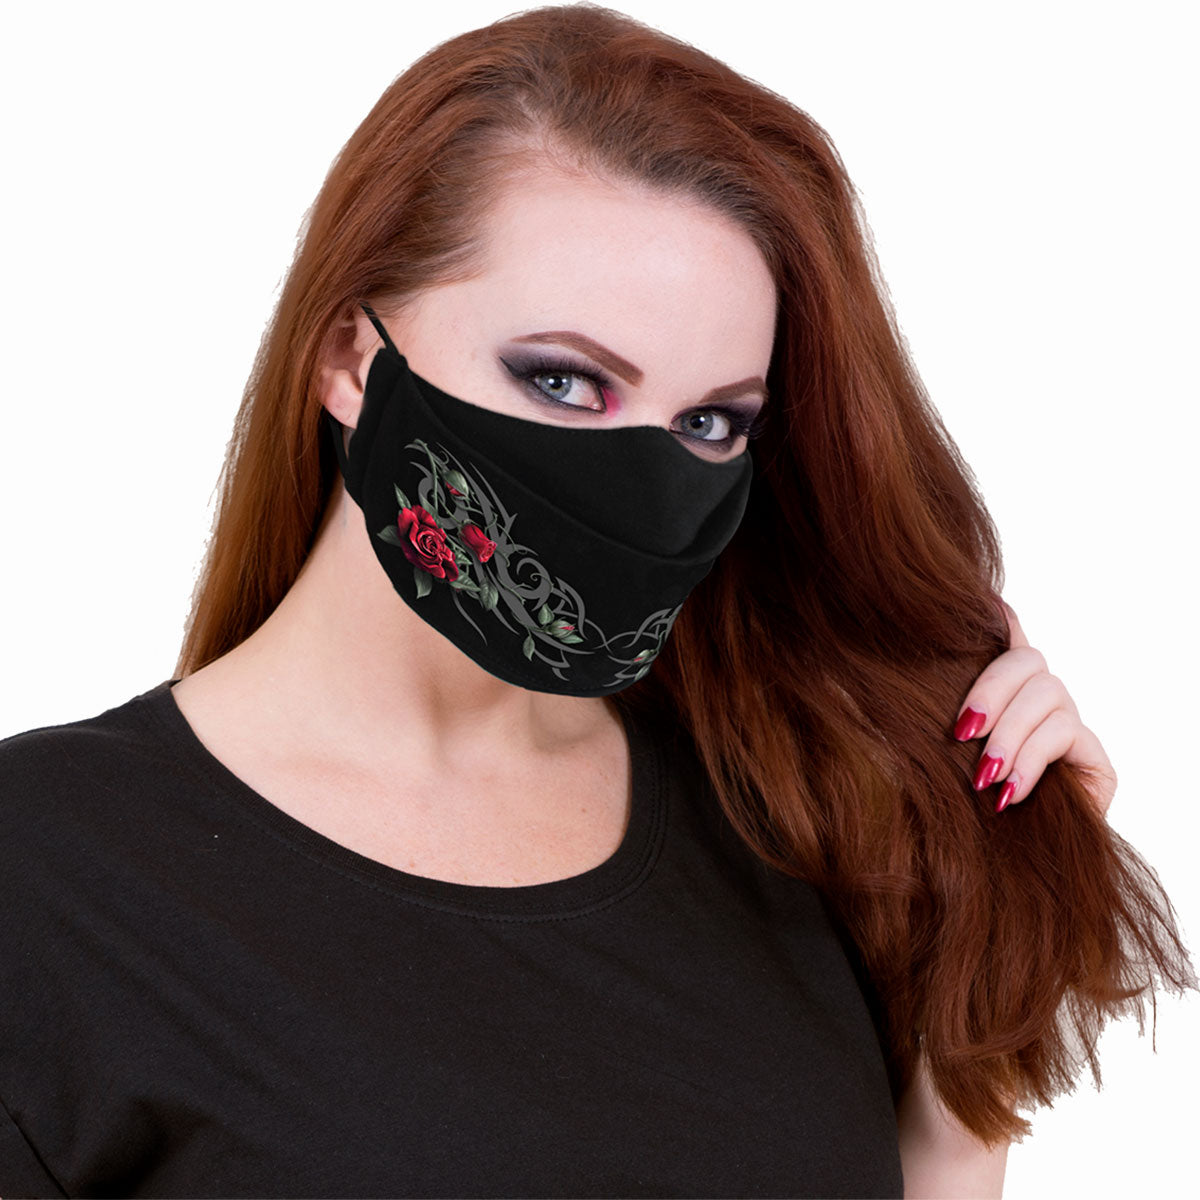 TRIBAL ROSE - Premium Cotton Fashion Maske mit Versteller